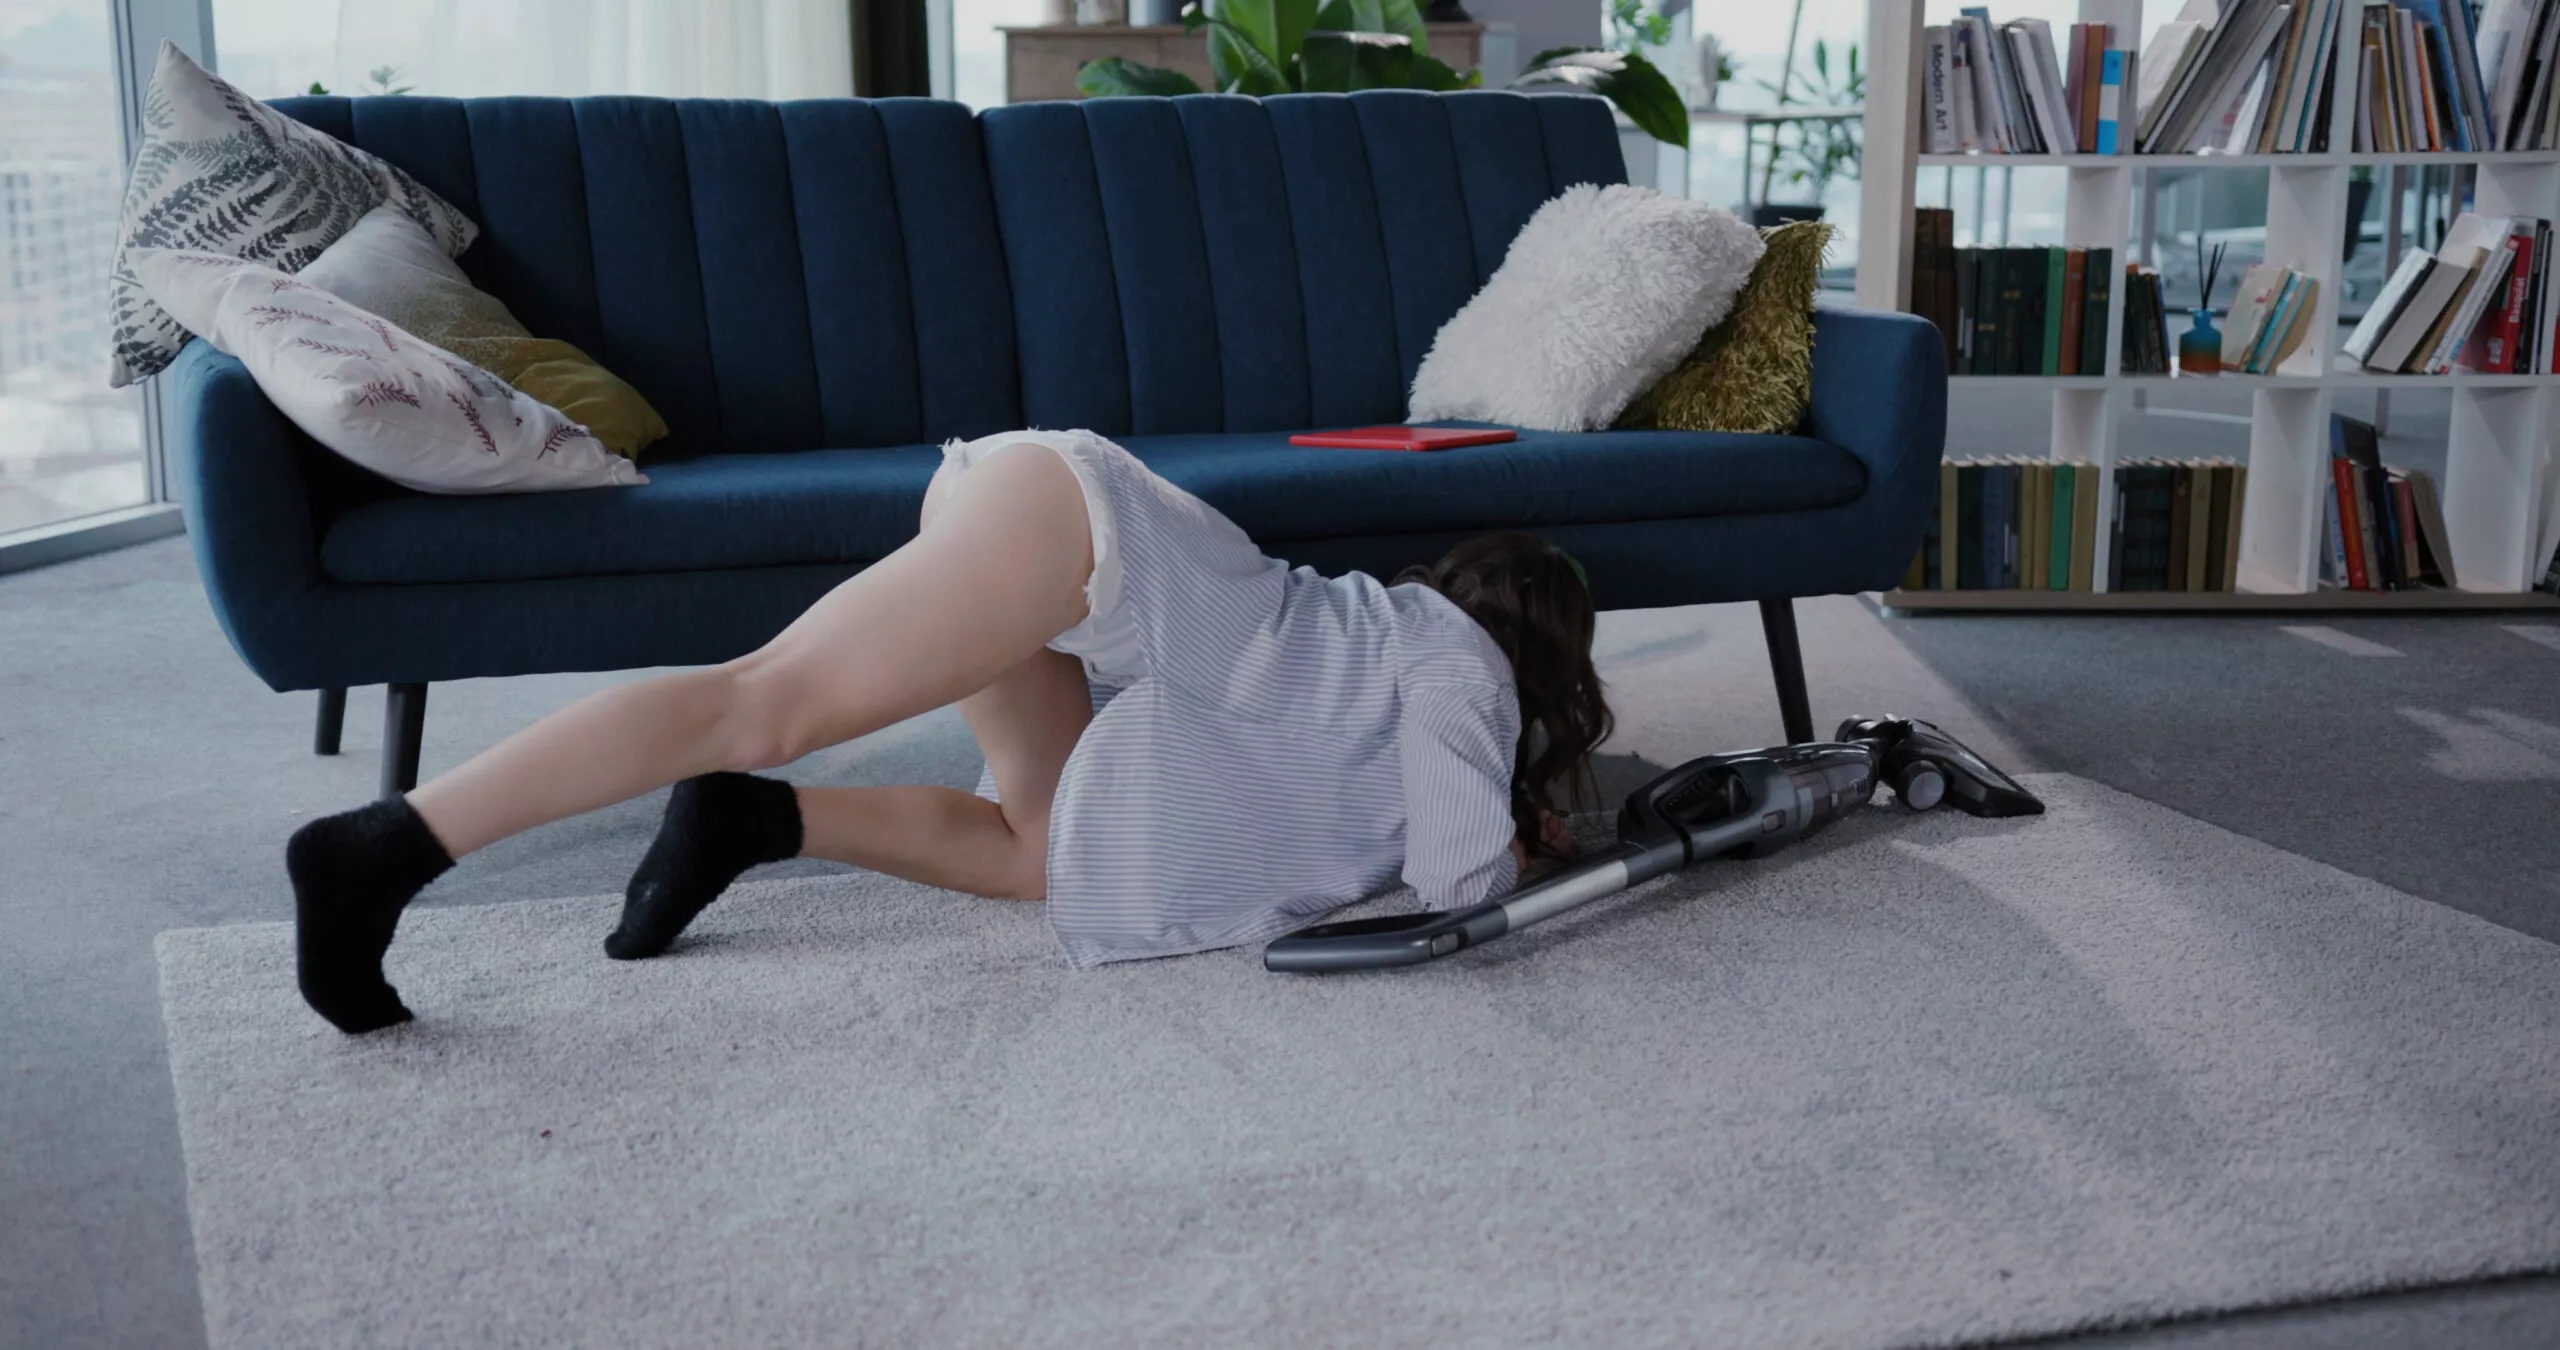 Mujer atractiva joven sexy con traje casual blanco sentado en el suelo limpiando el polvo con una aspiradora. Ama de casa. Disfrute.